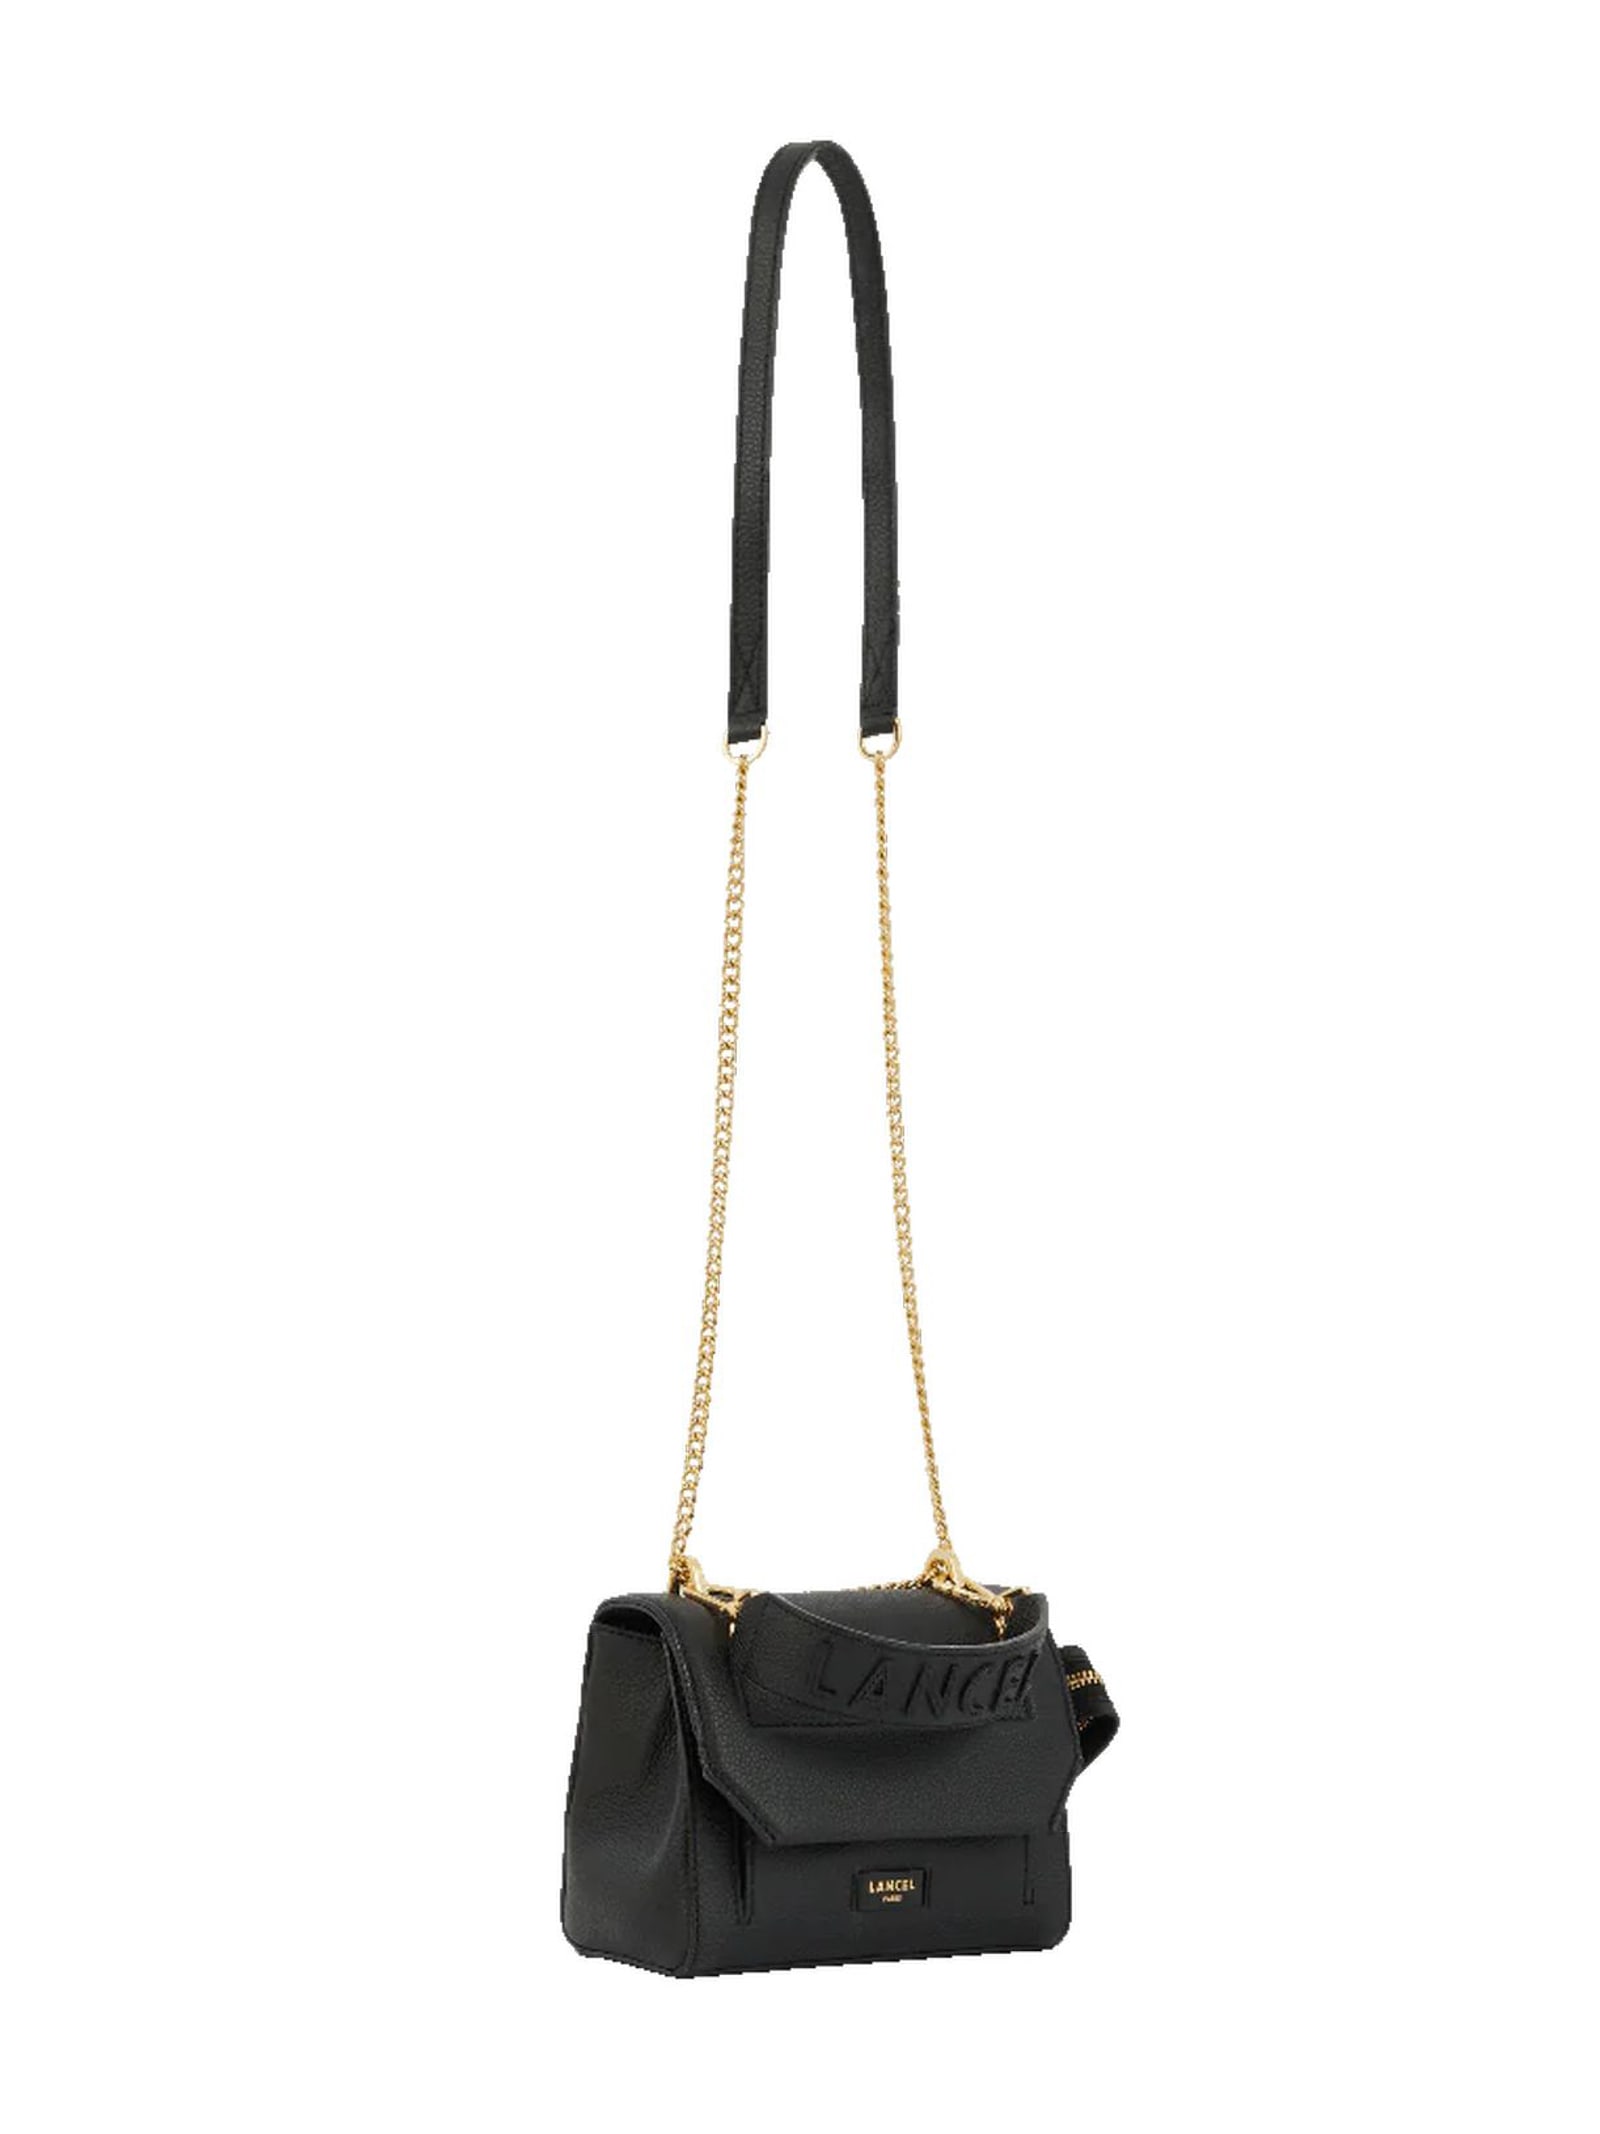 Shop Lancel Black Grained Leather Shoulder Bag